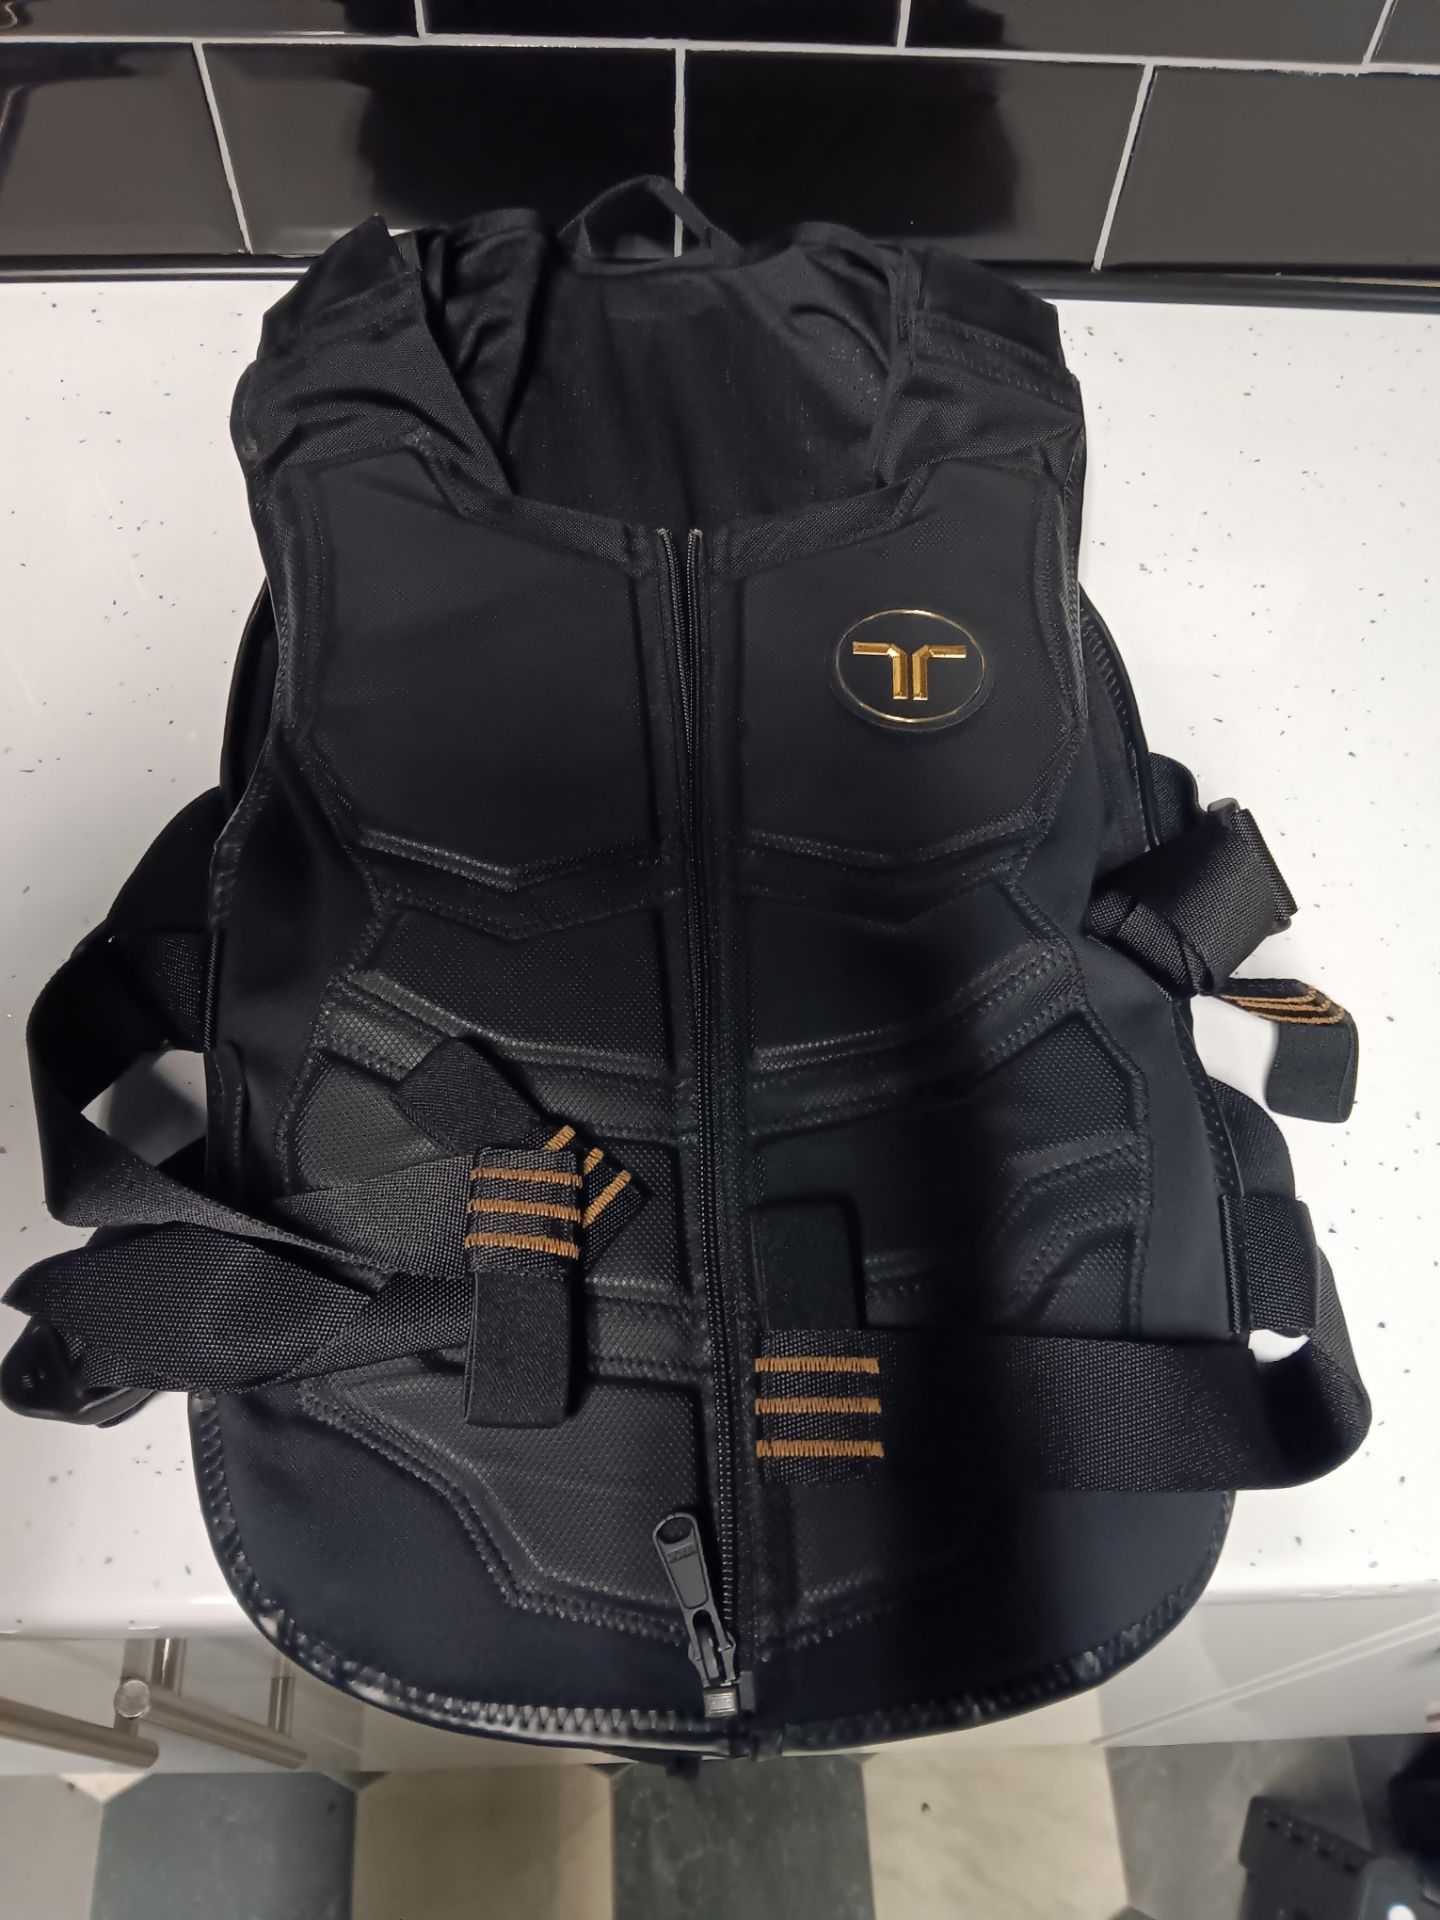 bHaptics TactSuit X40 Haptic Vest – Cost New £550